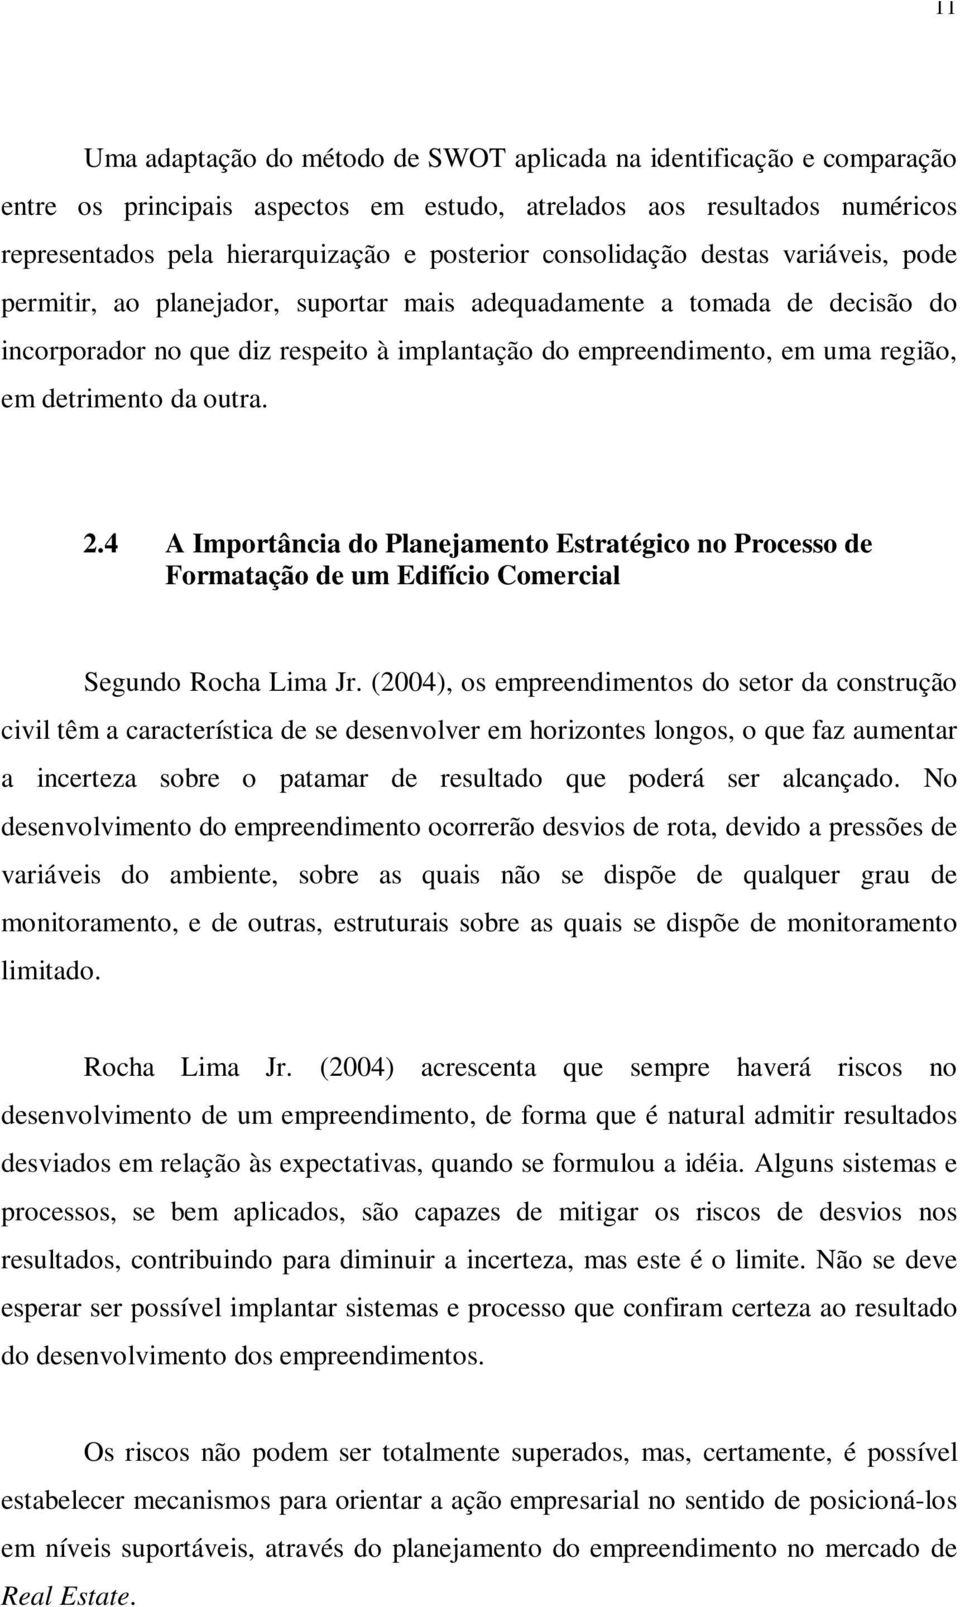 detrimento da outra. 2.4 A Importância do Planejamento Estratégico no Processo de Formatação de um Edifício Comercial Segundo Rocha Lima Jr.